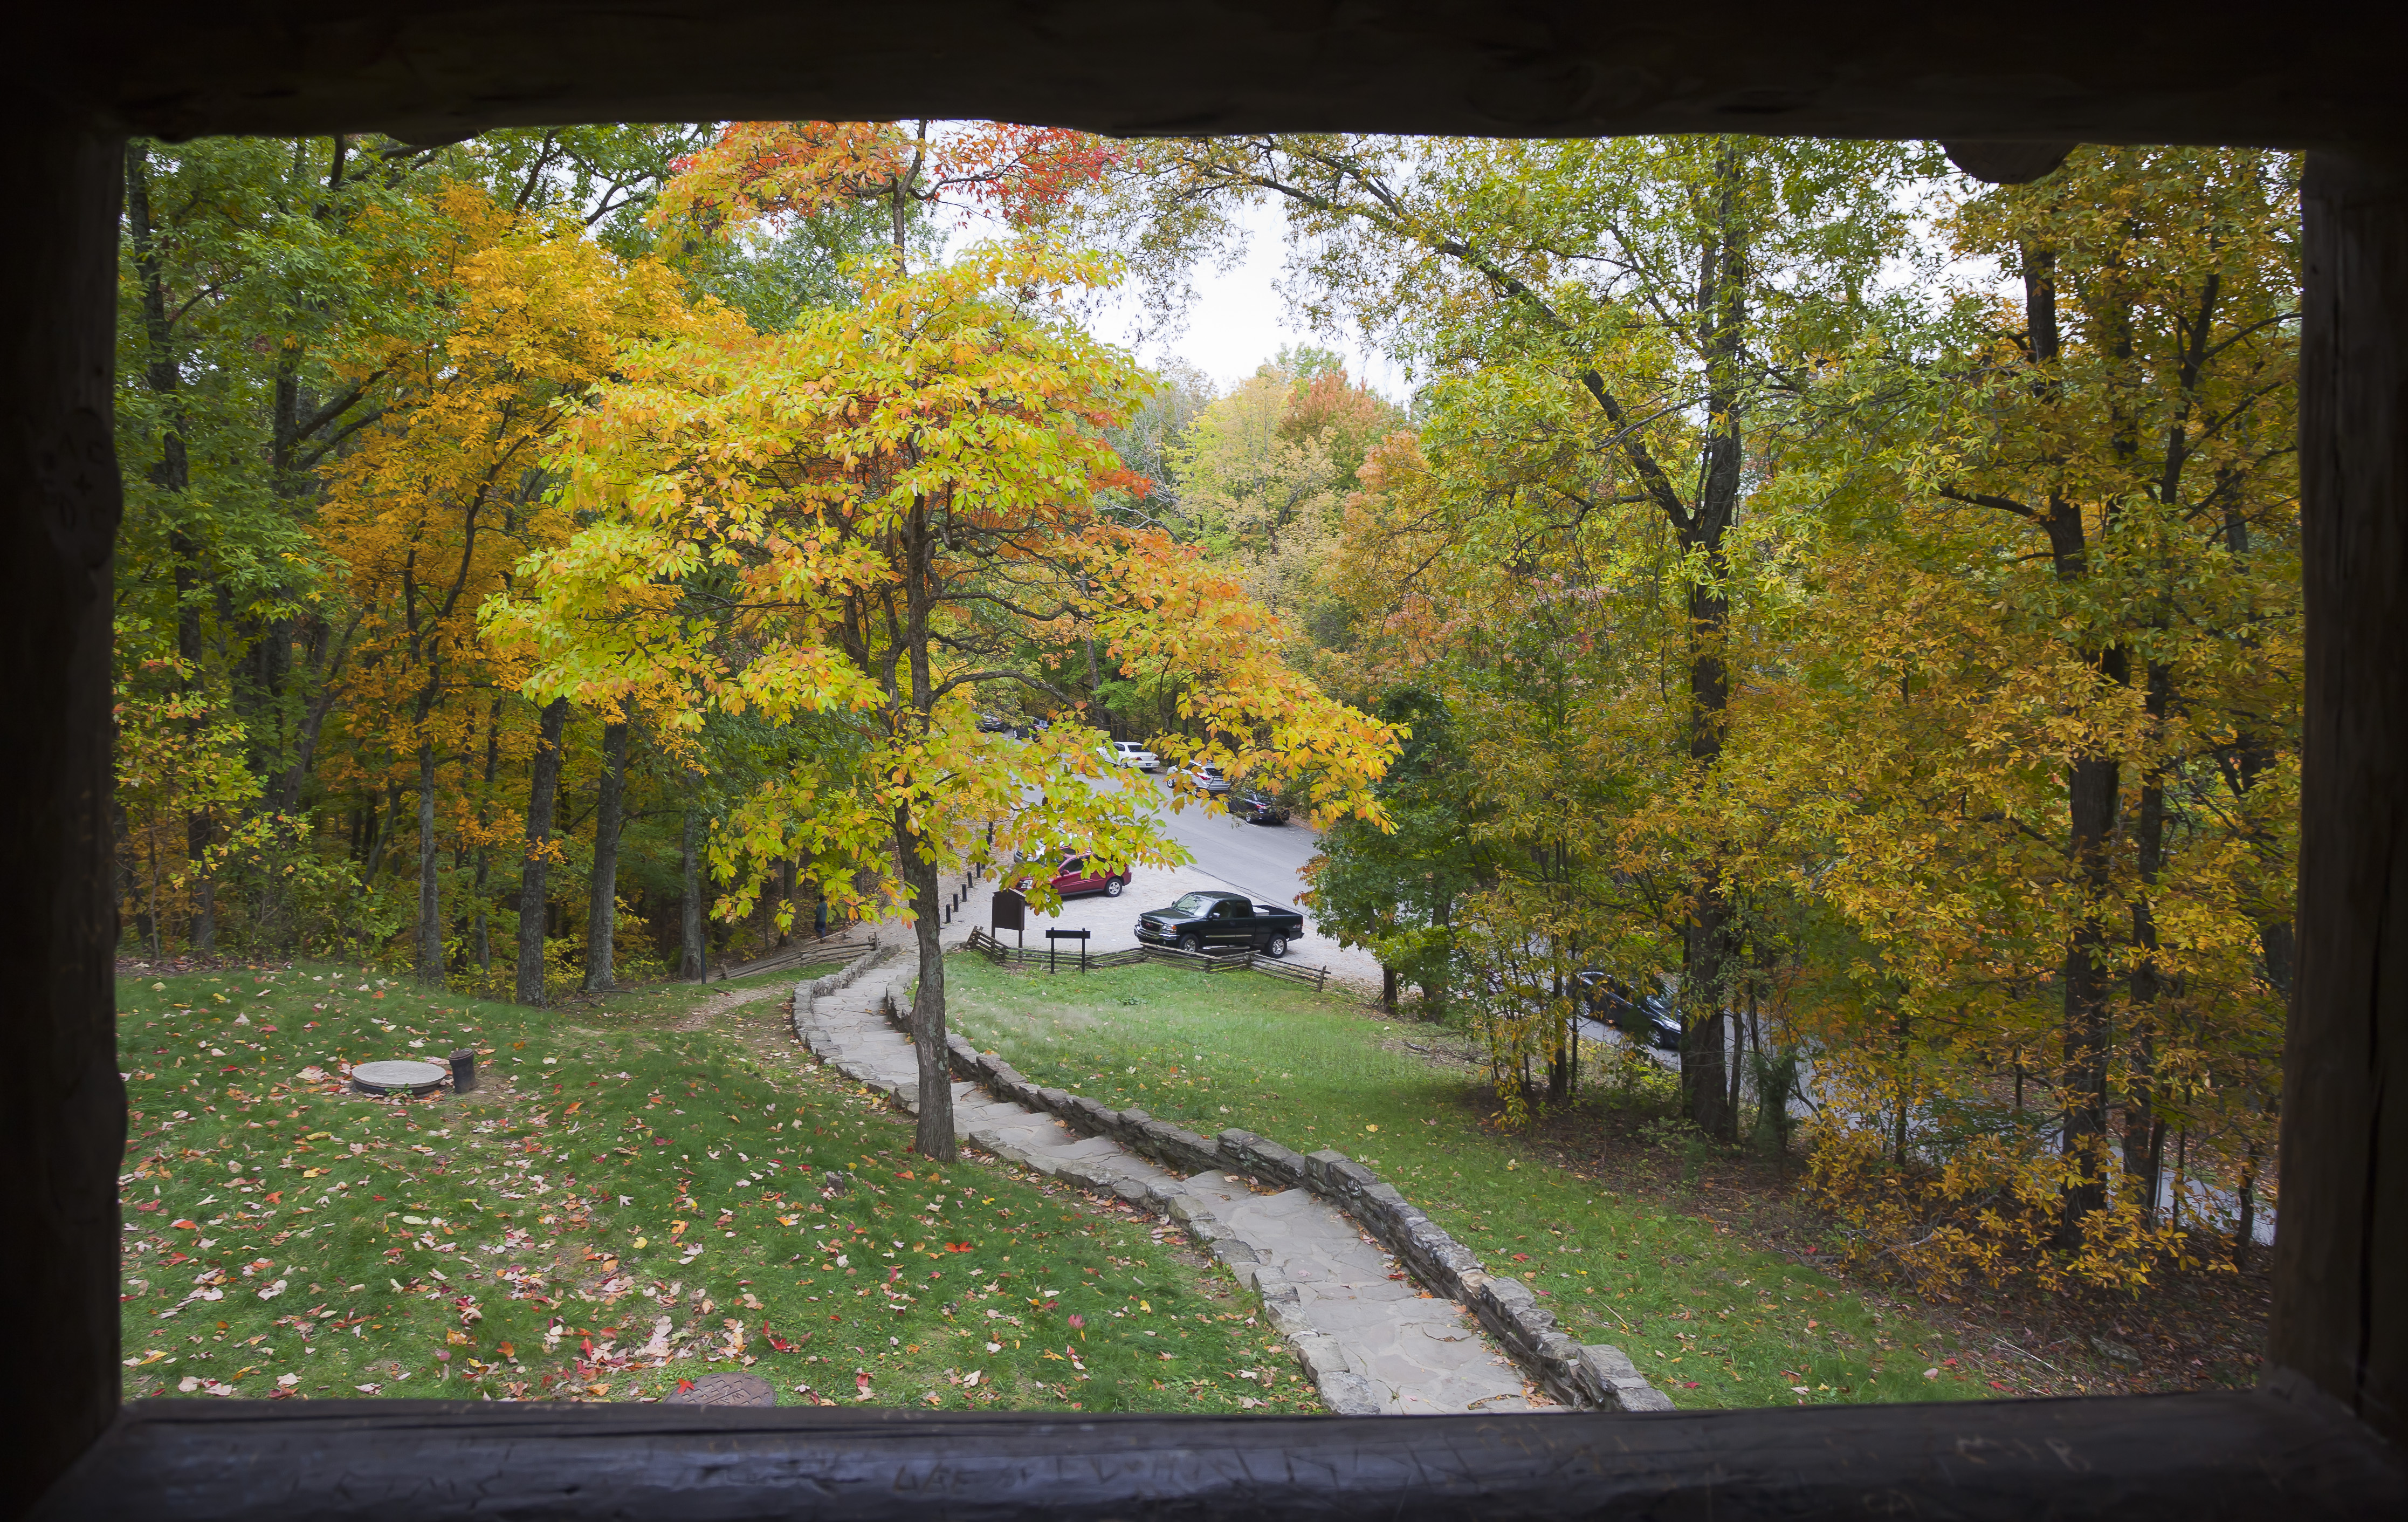 Vista desde la torre de observación, Parque Estatal Brown County, Indiana, Estados Unidos, 2012-10-14, DD 06